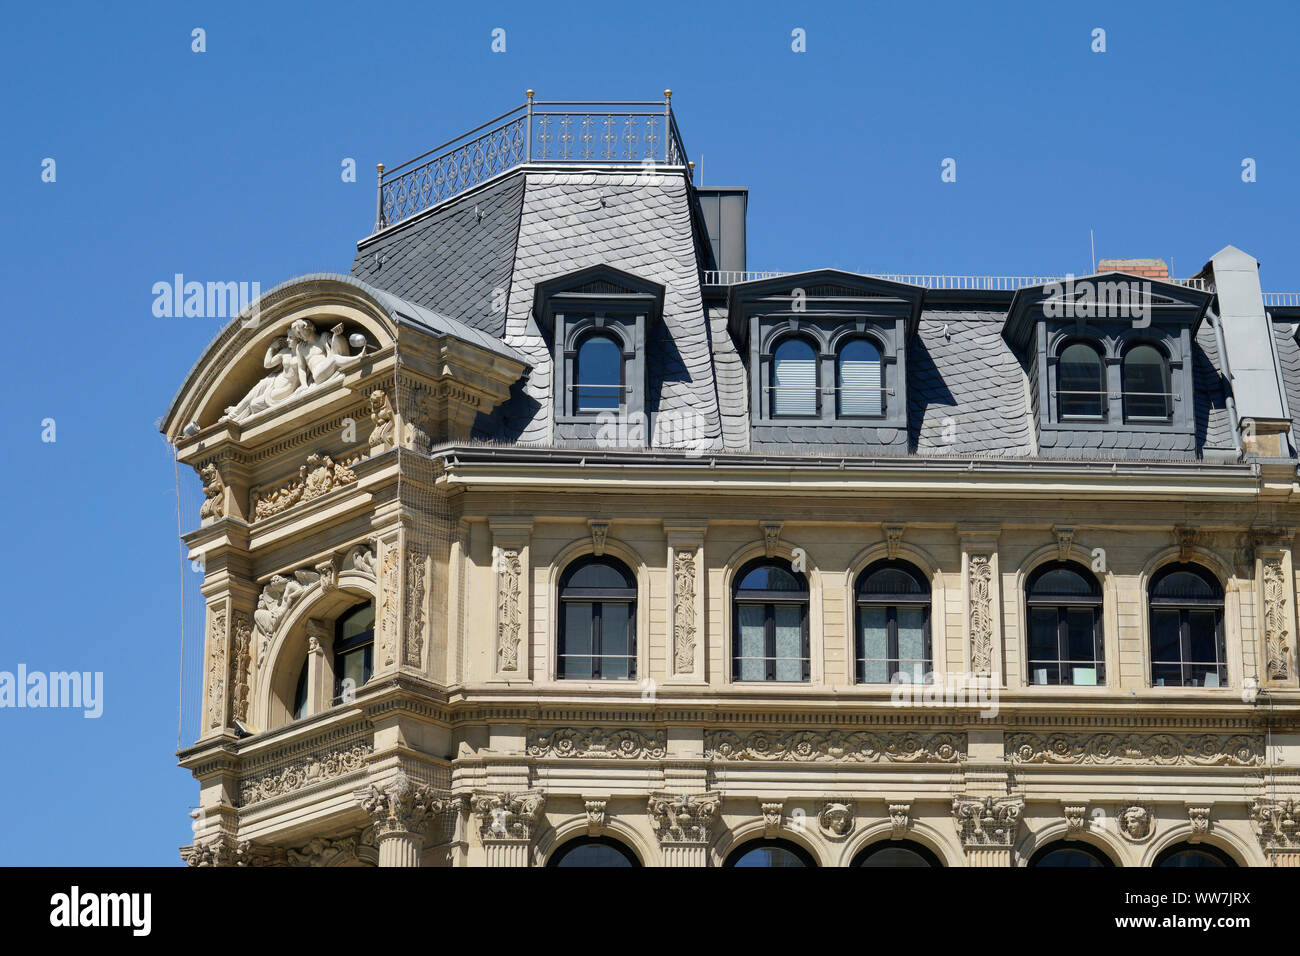 Alemania, Hesse, Francfort del Main, la Plaza de la Ópera, el impresionante edificio residencial y comercial del período neorrenacentista (1881), con fachada Foto de stock